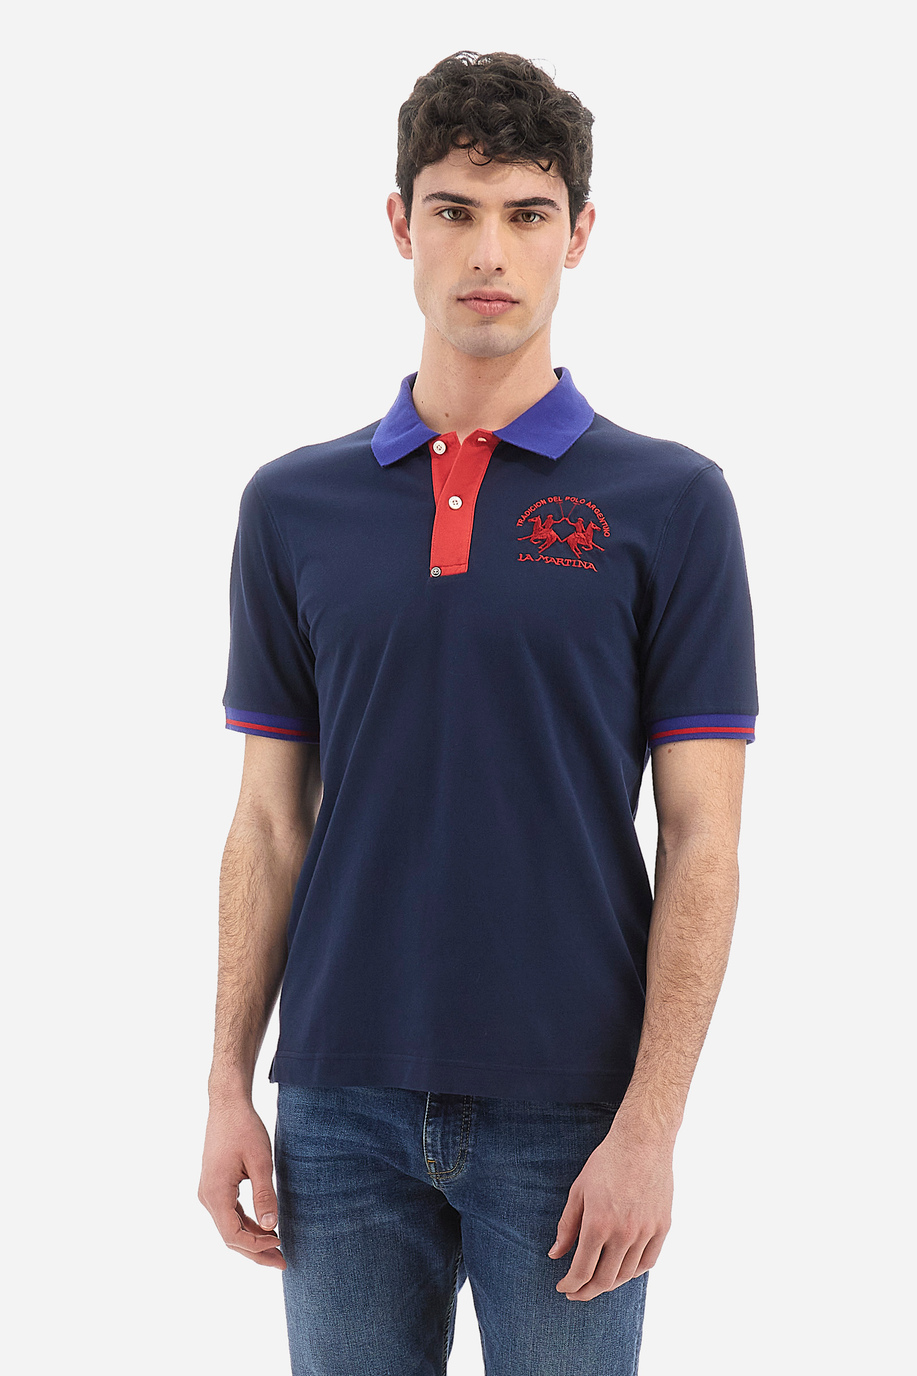 Herren-Poloshirt aus elastischer Baumwolle mit einfarbigen kurzen Ärmeln slim fit  -  Trixie - Poloshirts | La Martina - Official Online Shop